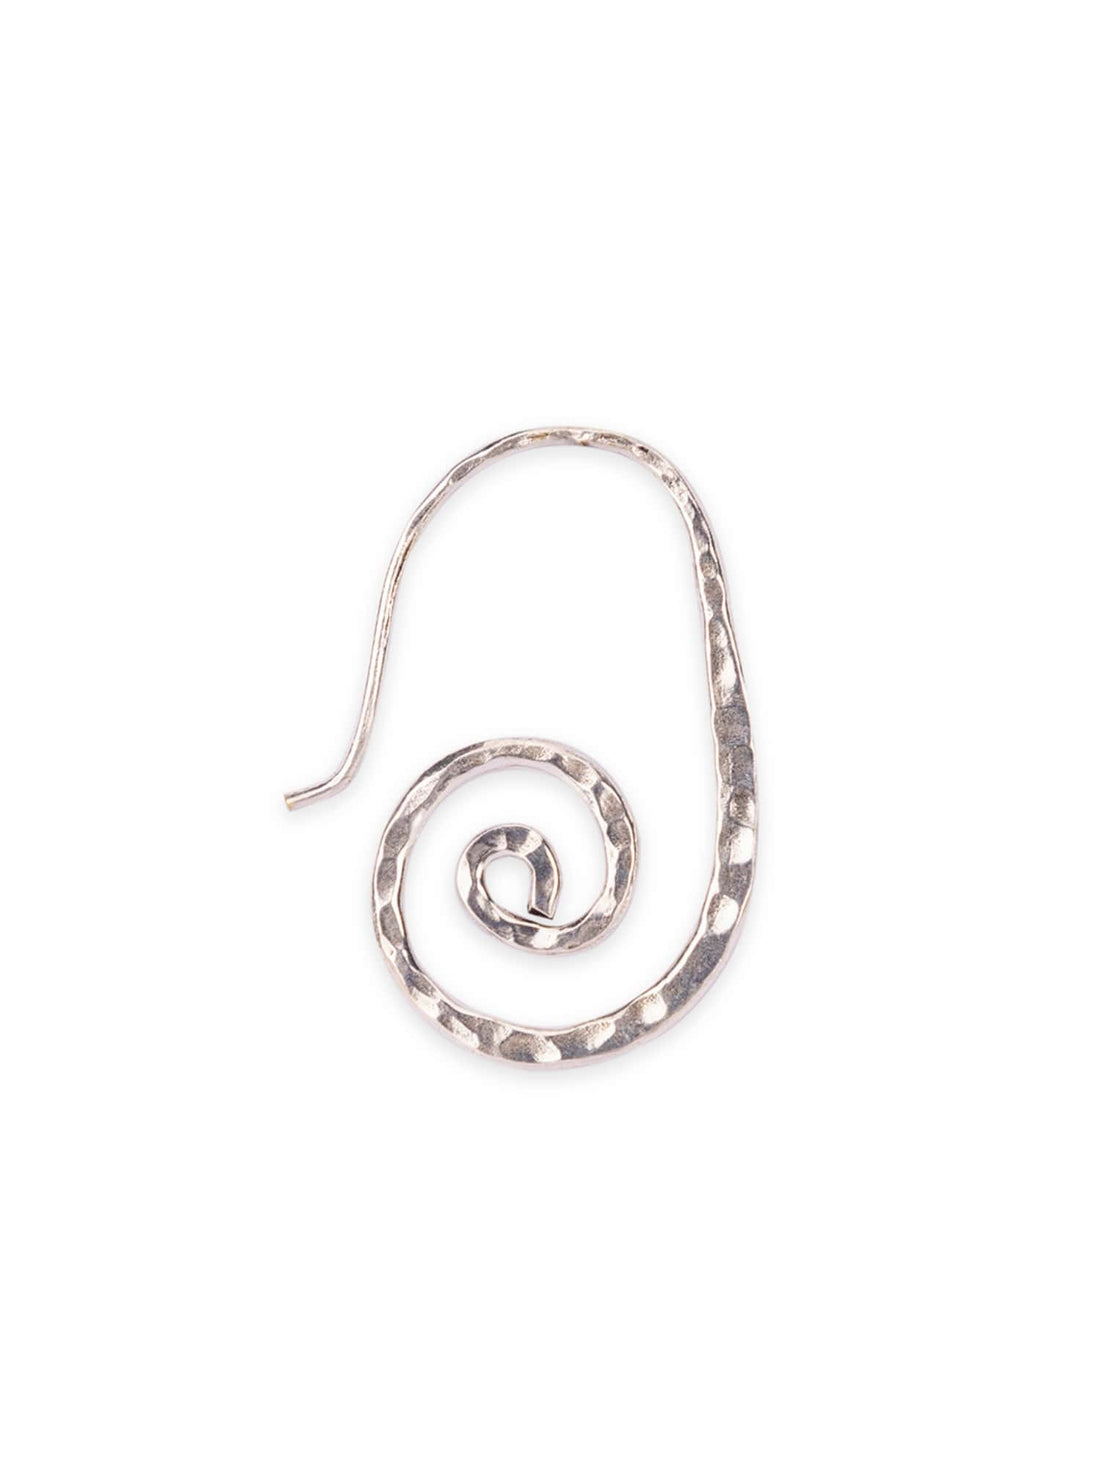 Daily Wear Drops & Danglers Earrings - Elegant Simplicity Silver-Plated Brass Earrings By Studio One Love